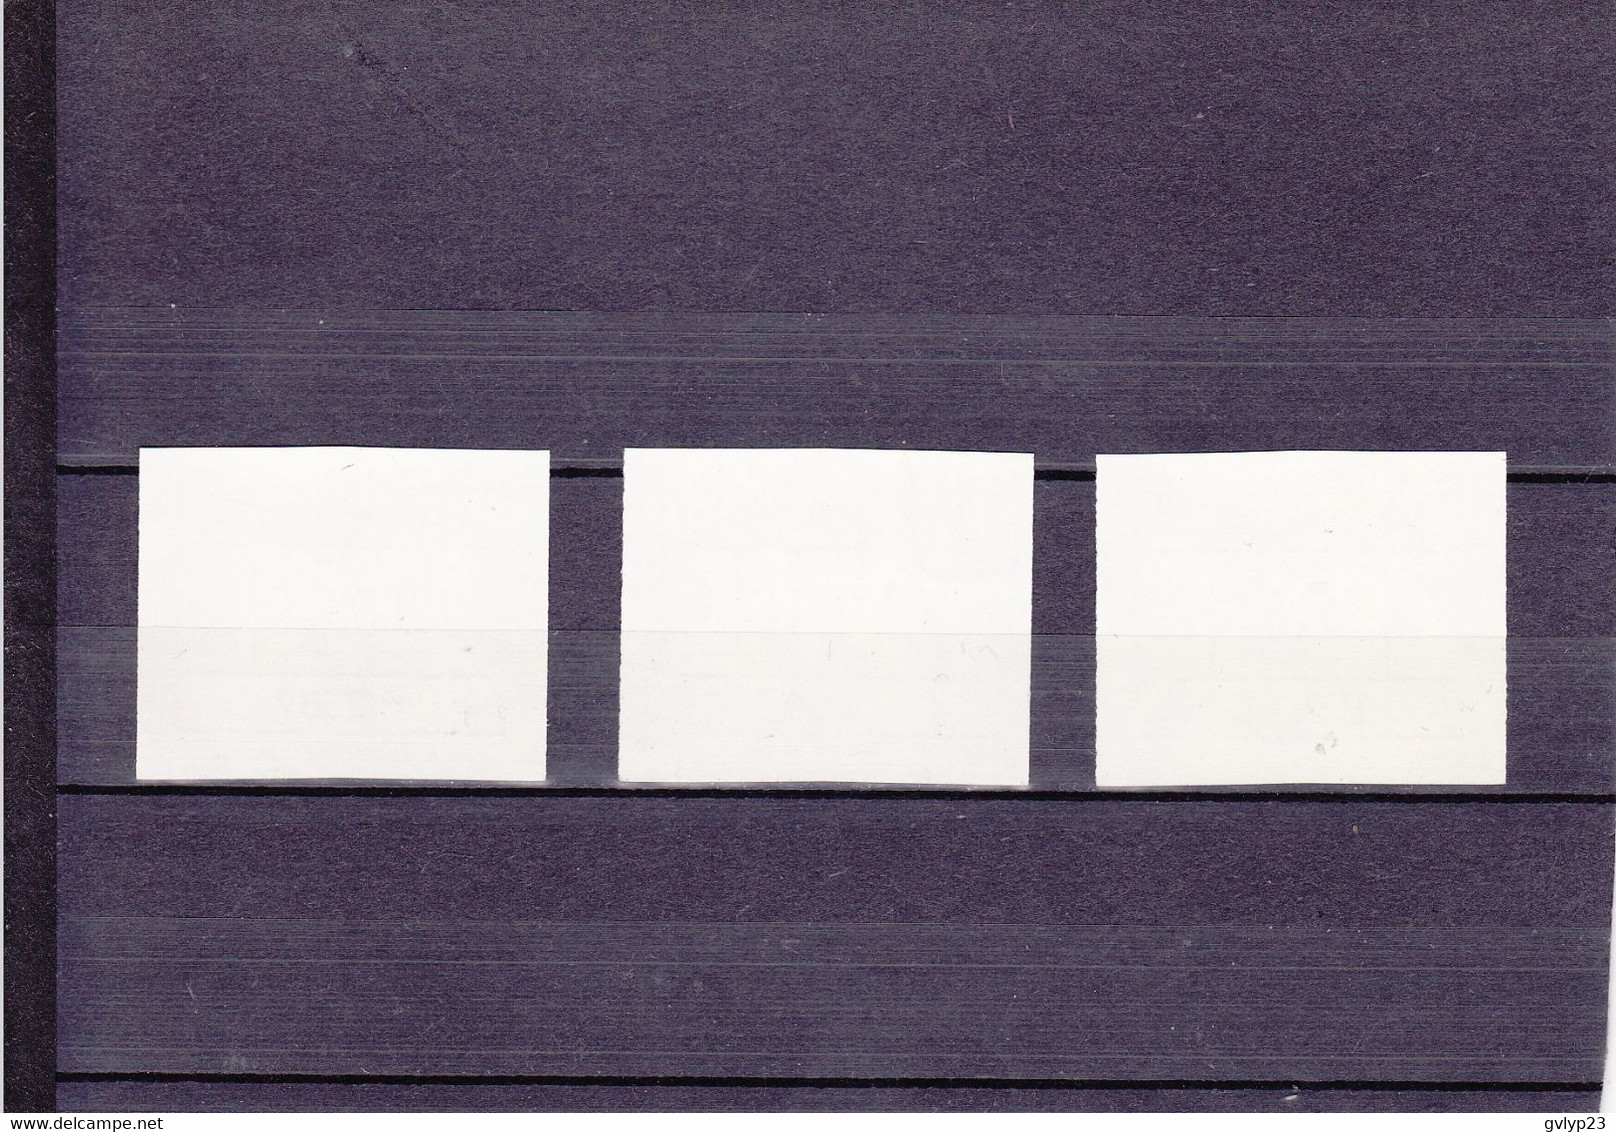 TIMBRES DE DISTRIBUTEURS/UNE SéRIE DE 3 VALEURS/6F, 10F, 12F/ N°1 YVERT ET TELLIER 1986 - Postage Labels